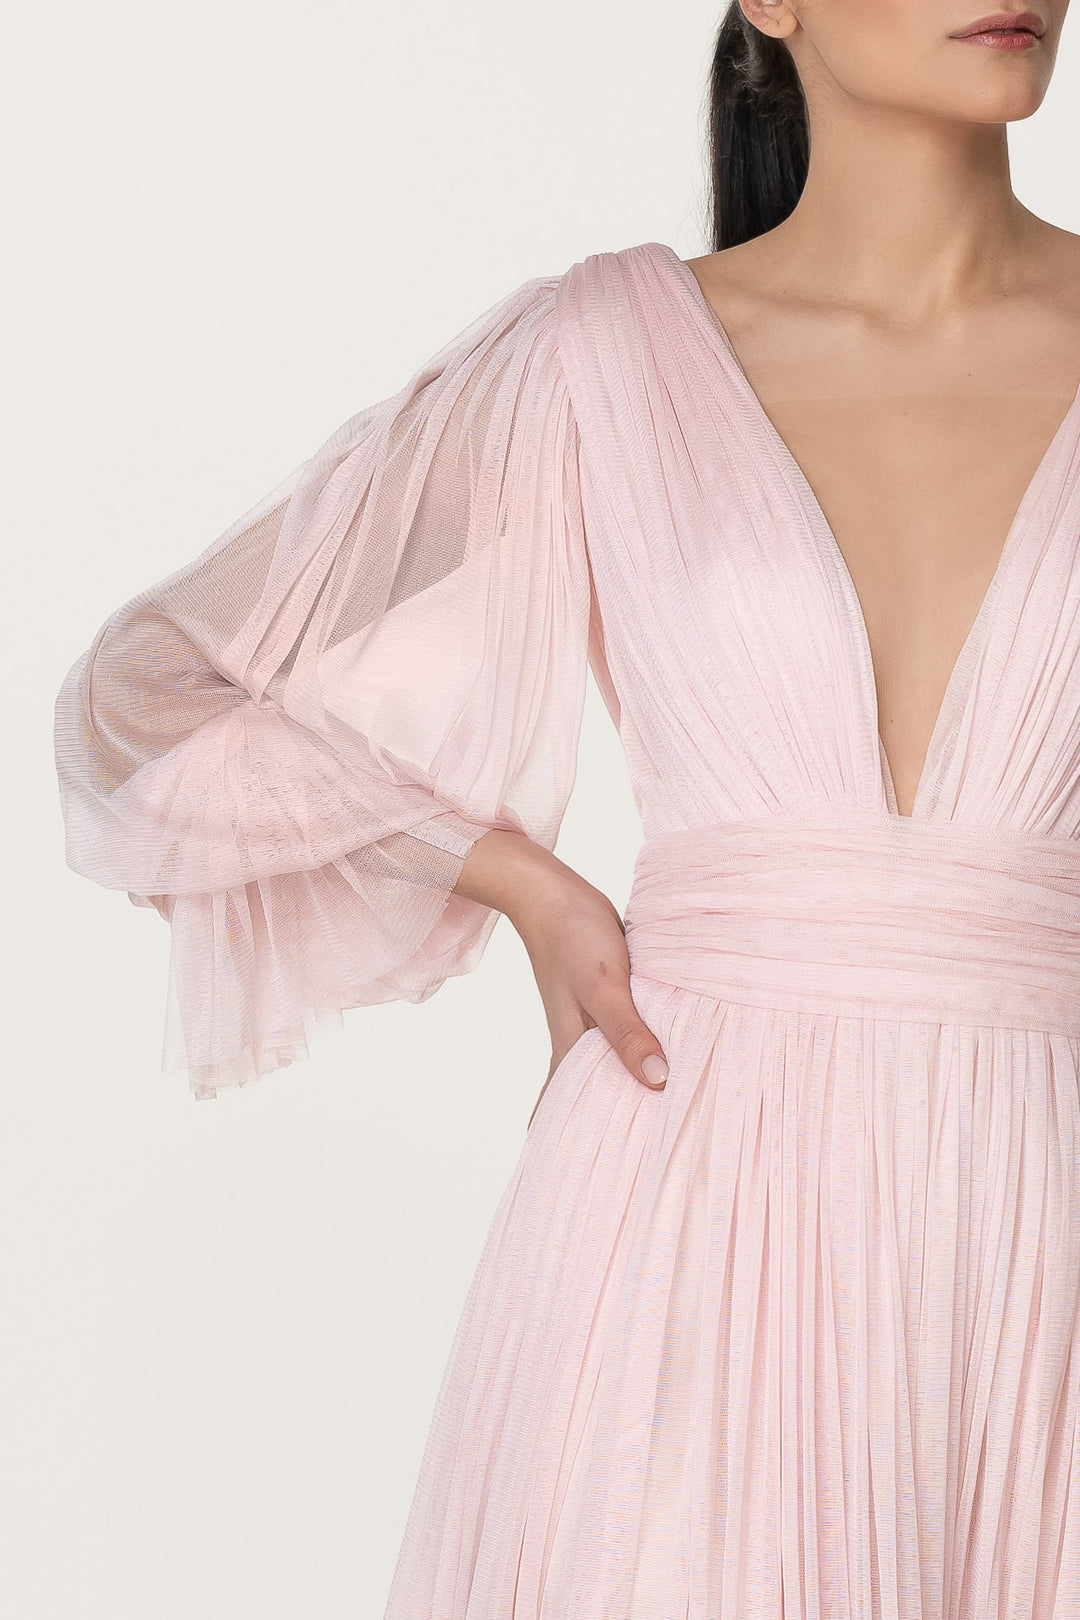 Kaira Pastel Pink Silk Tulle Short Dress